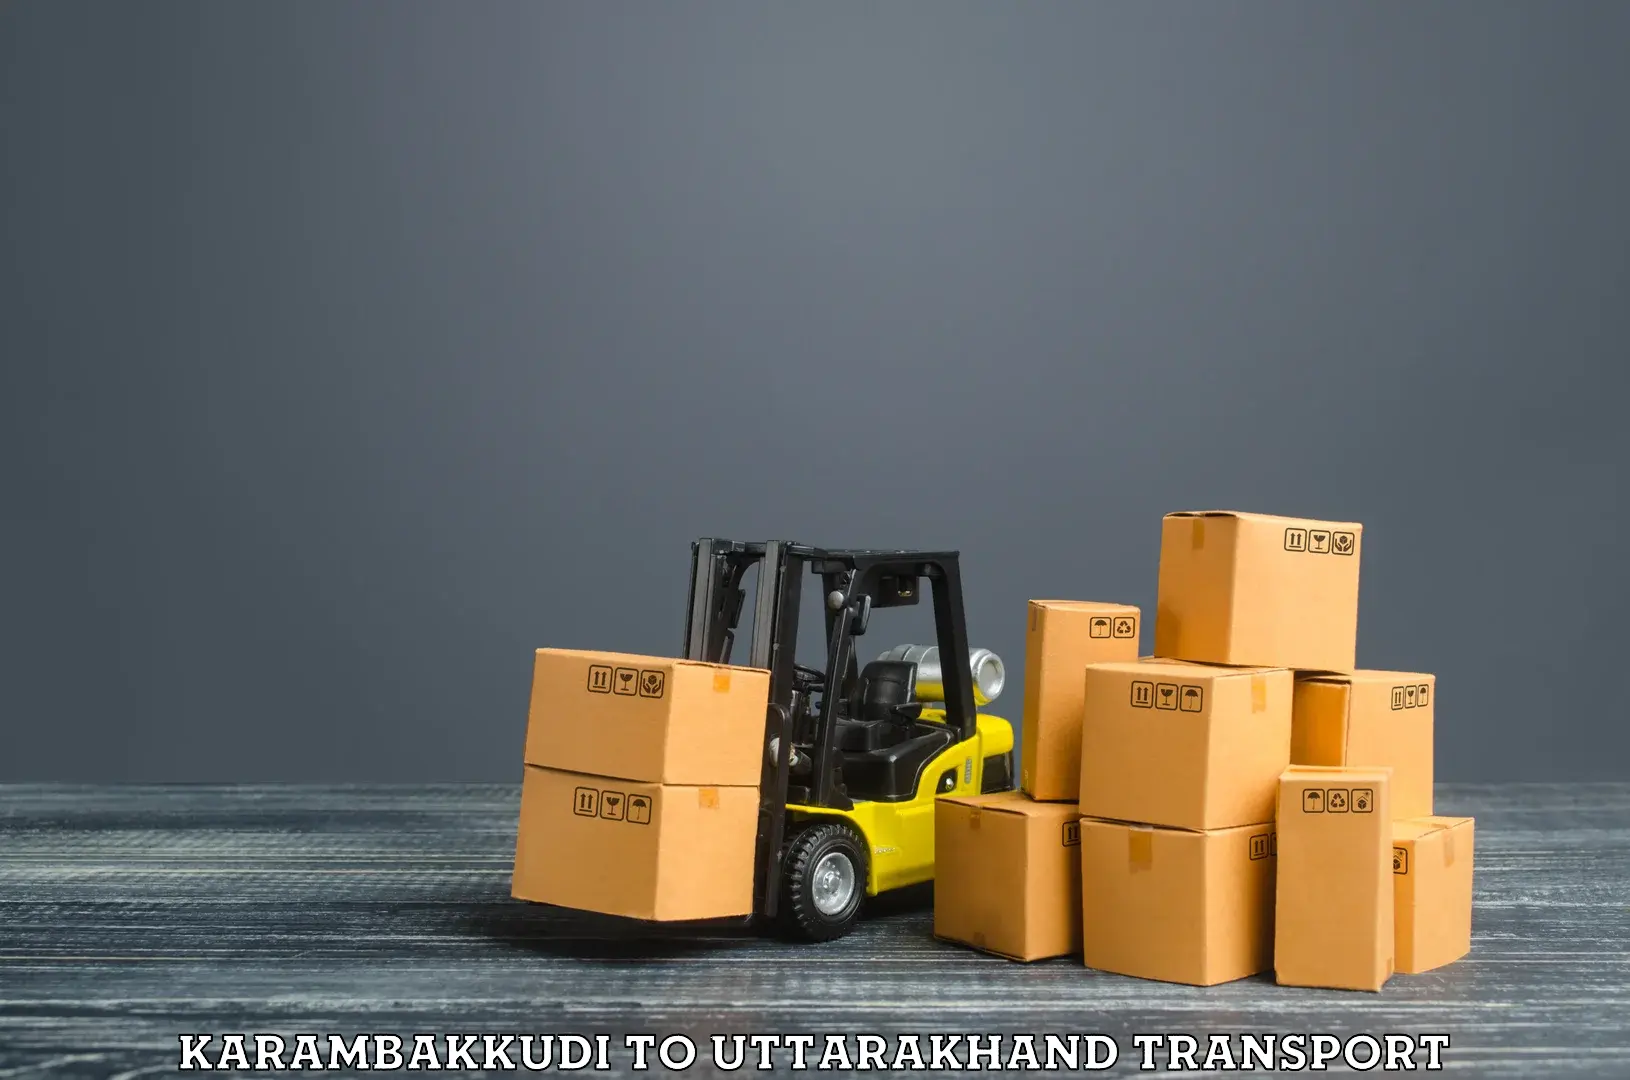 Goods delivery service in Karambakkudi to Gumkhal